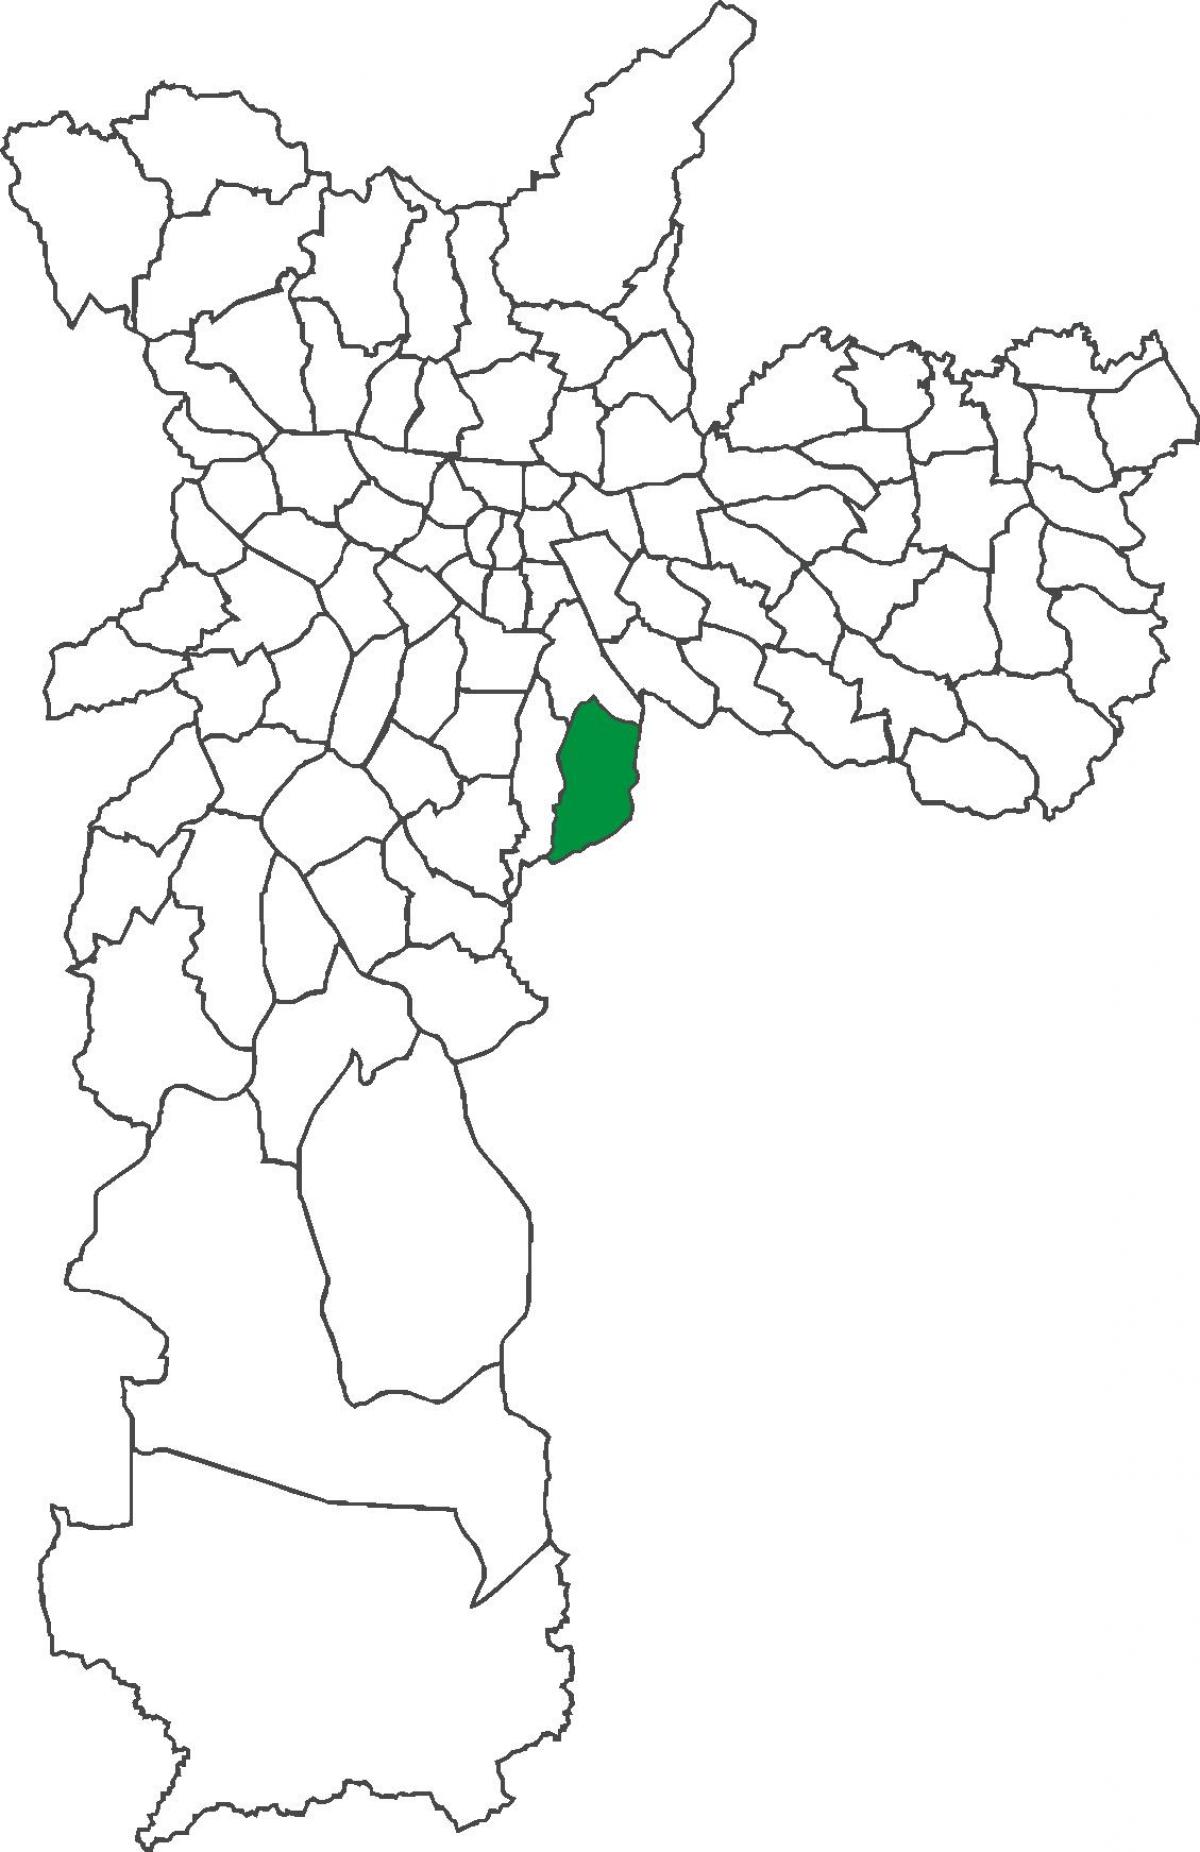 মানচিত্র Sacomã জেলা